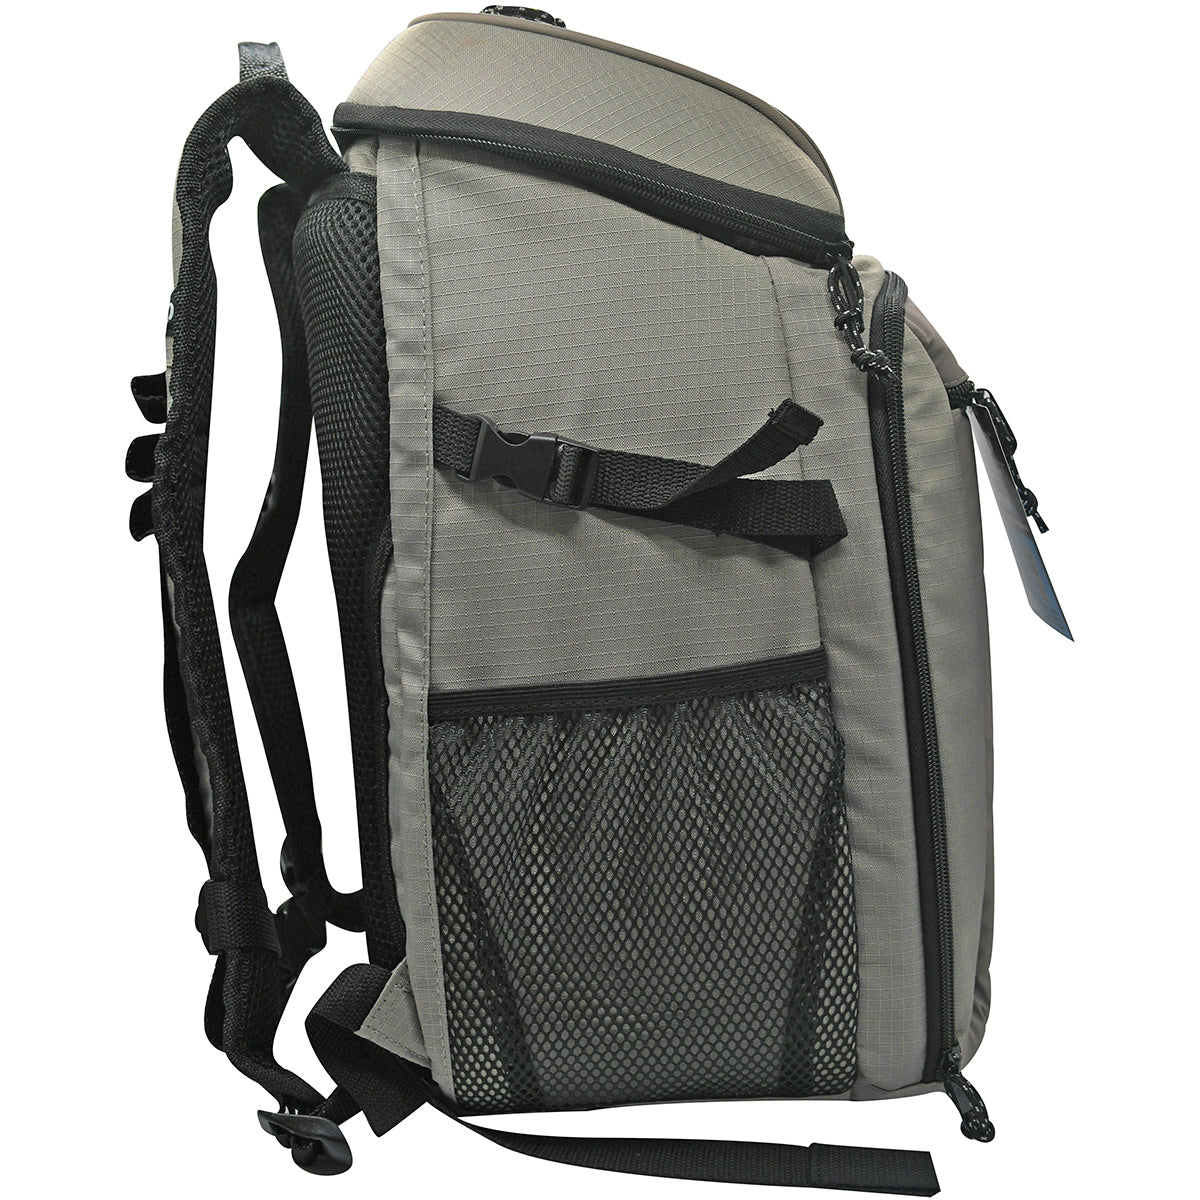 IGLOO Outdoorsman Gizmo 30-Can Backpack IGLOO